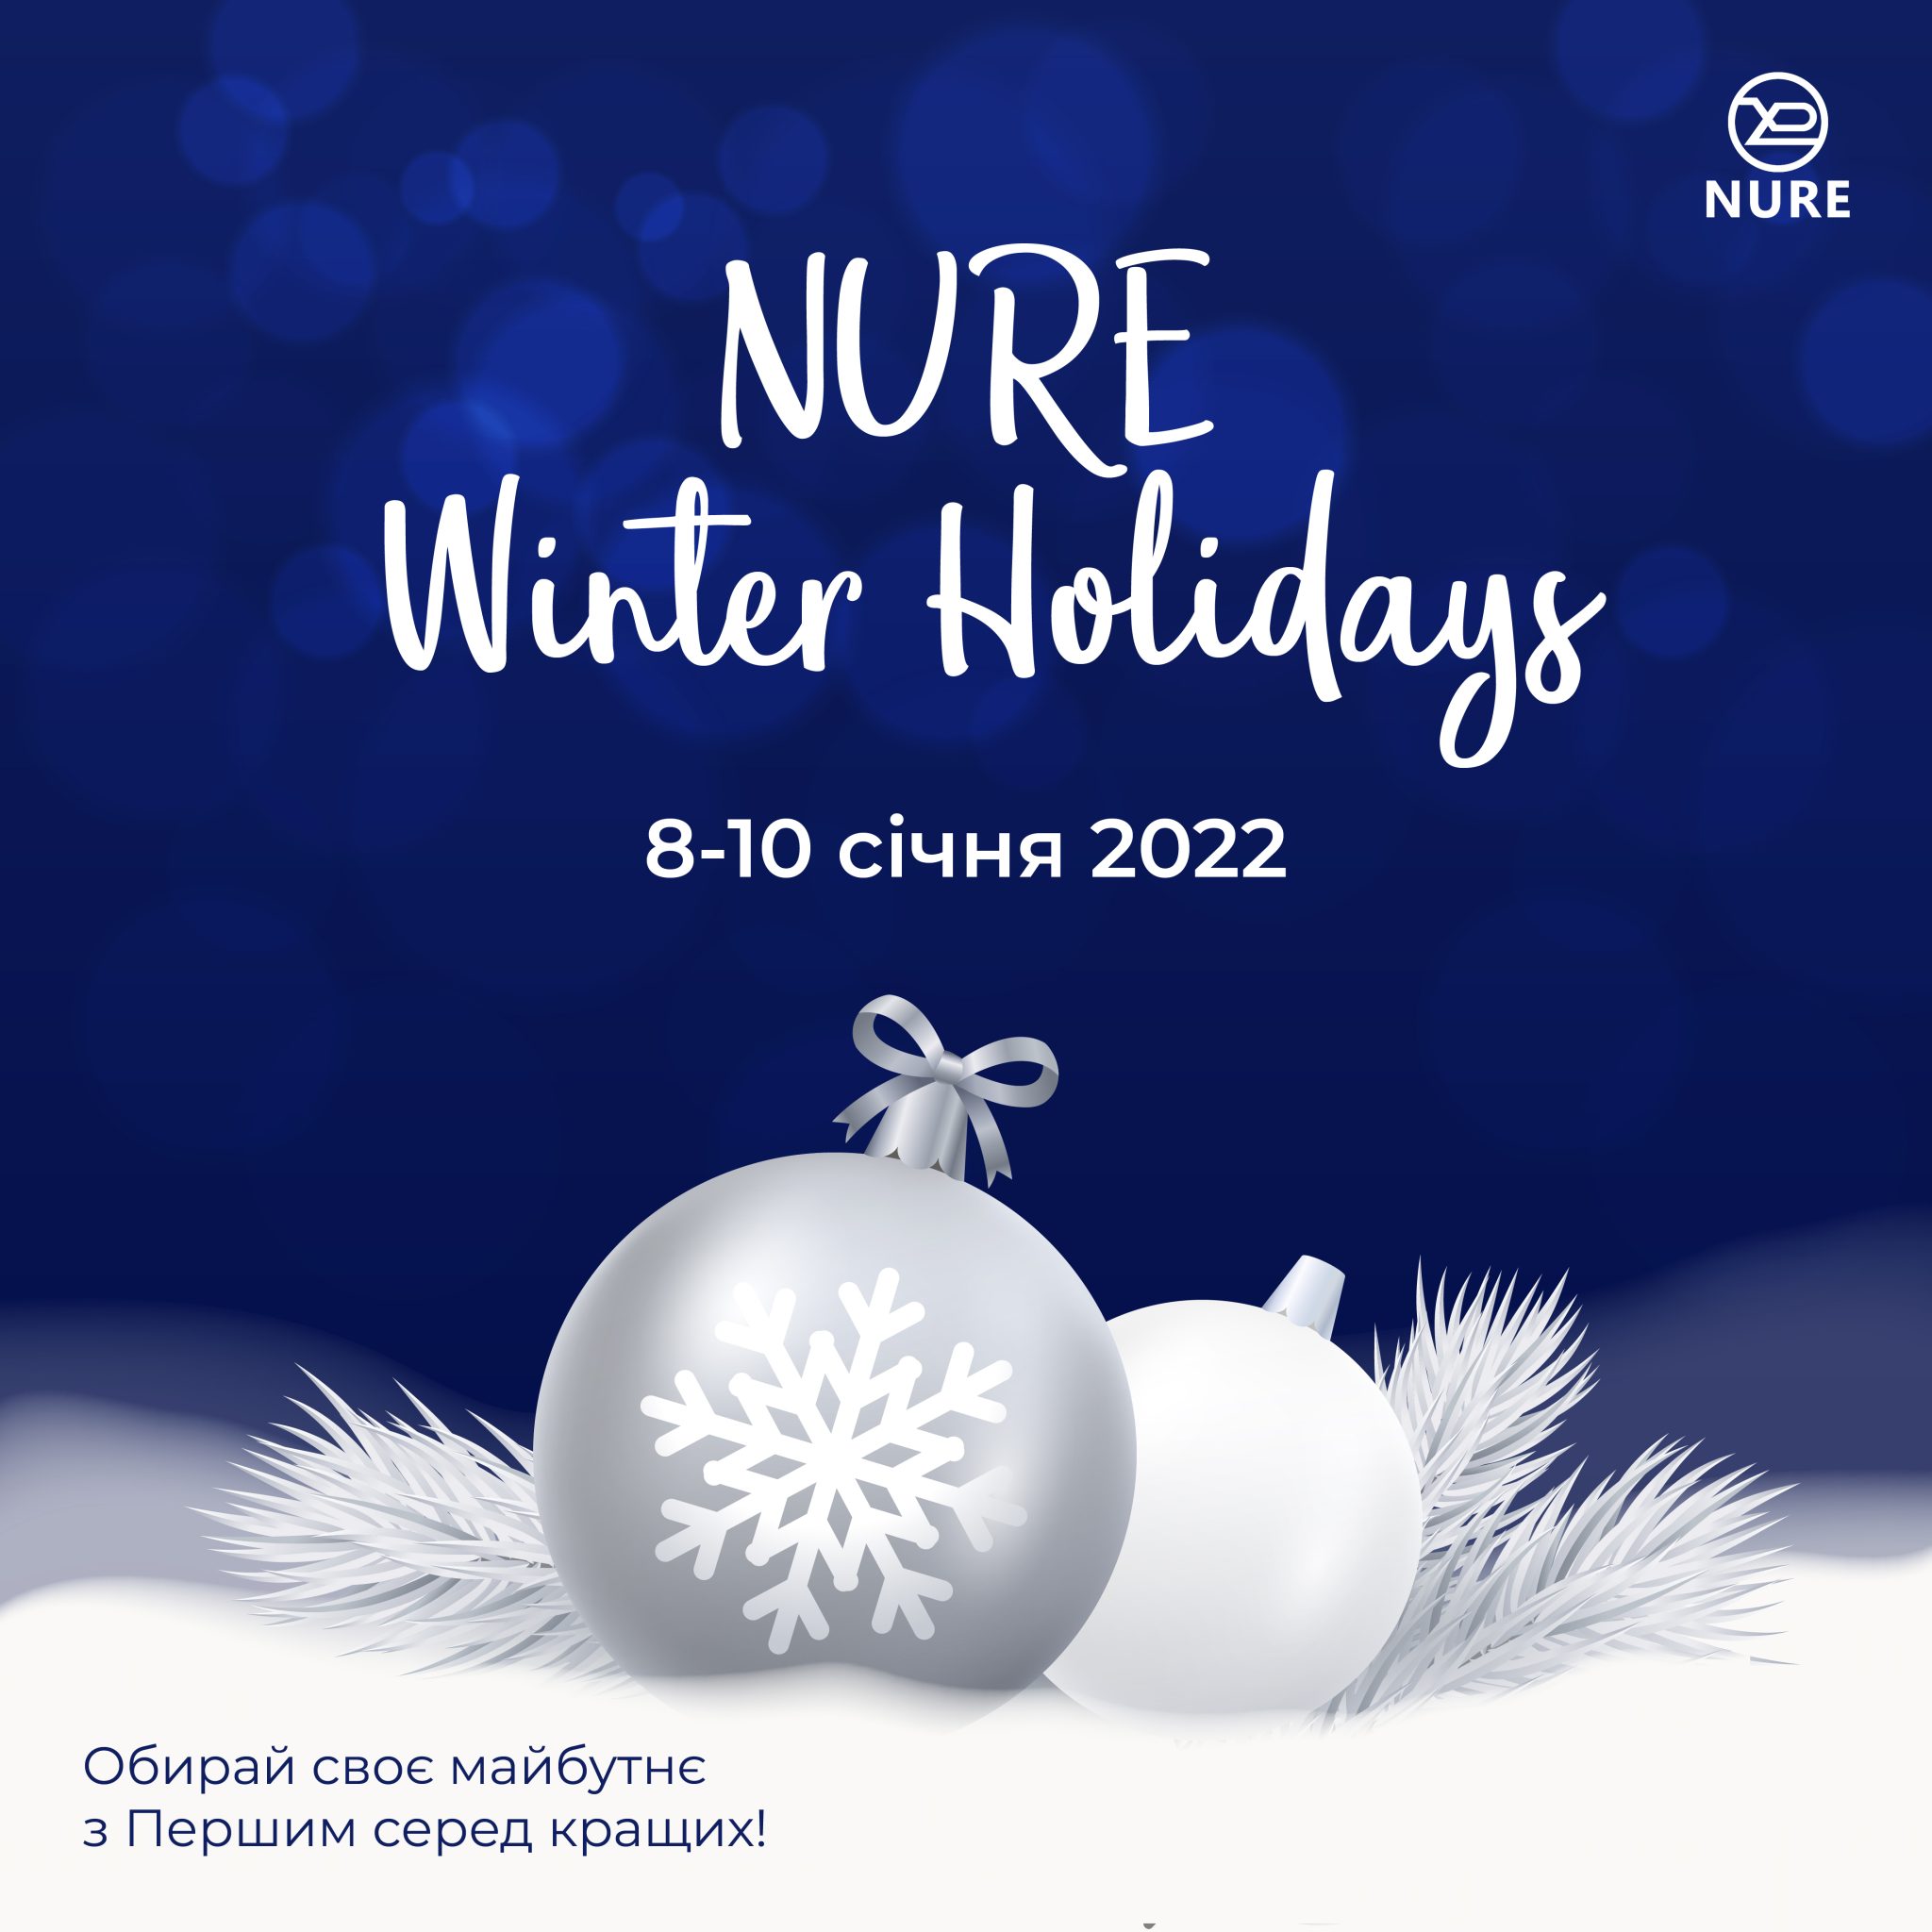 Nure Winter Holidays 2022 у ХНУРЕ